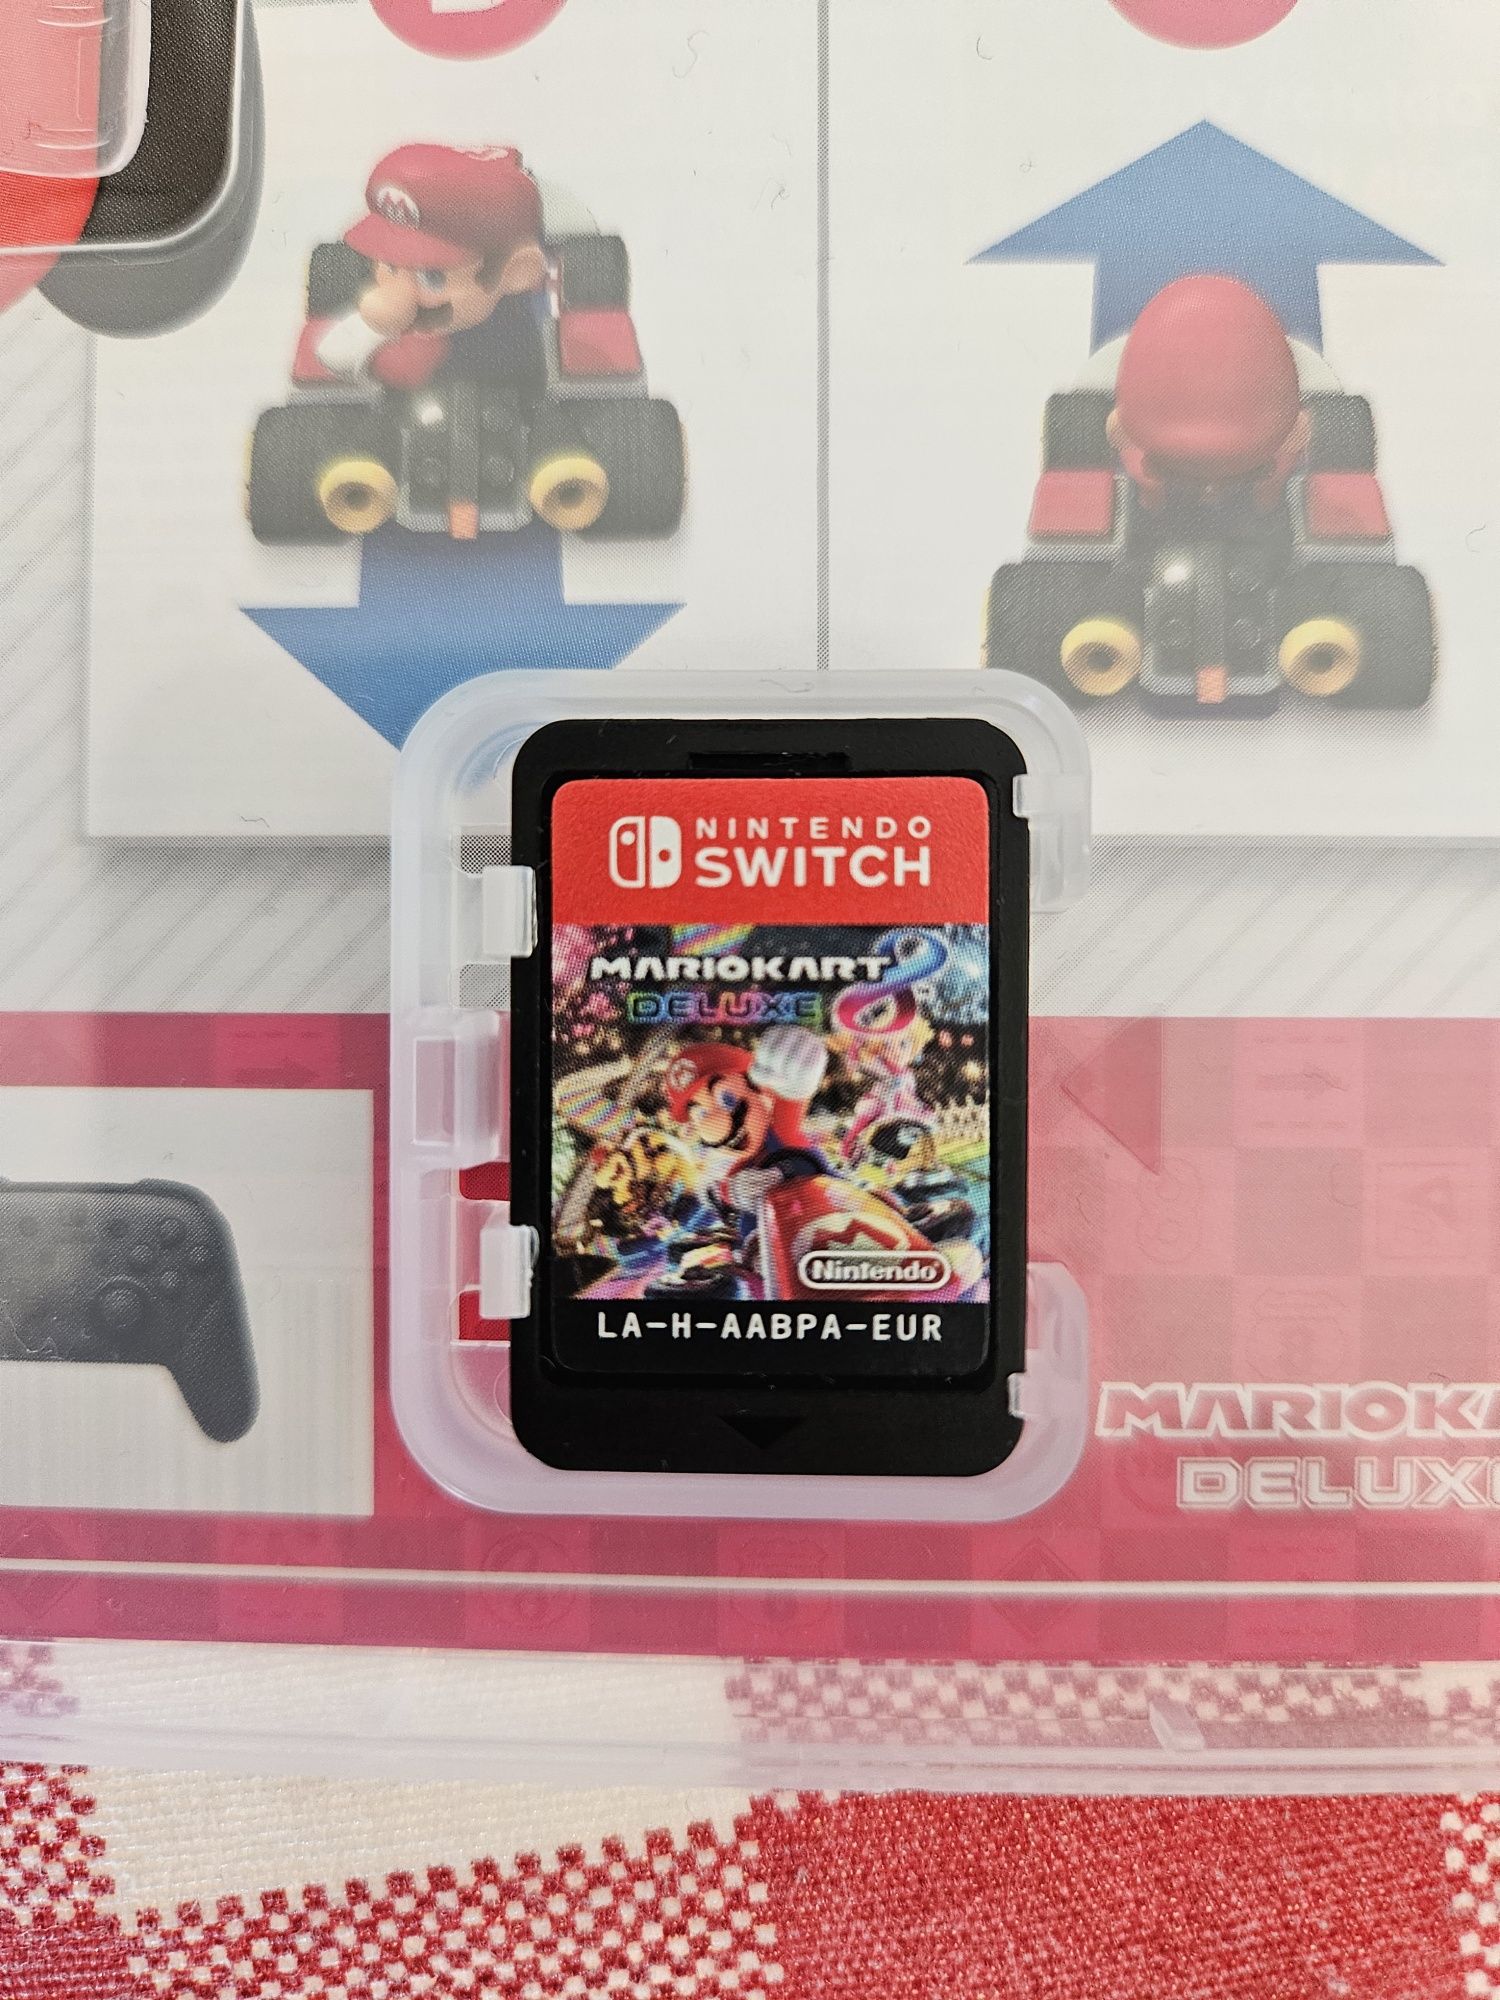 Nintendo switch mariokart deluxe 8